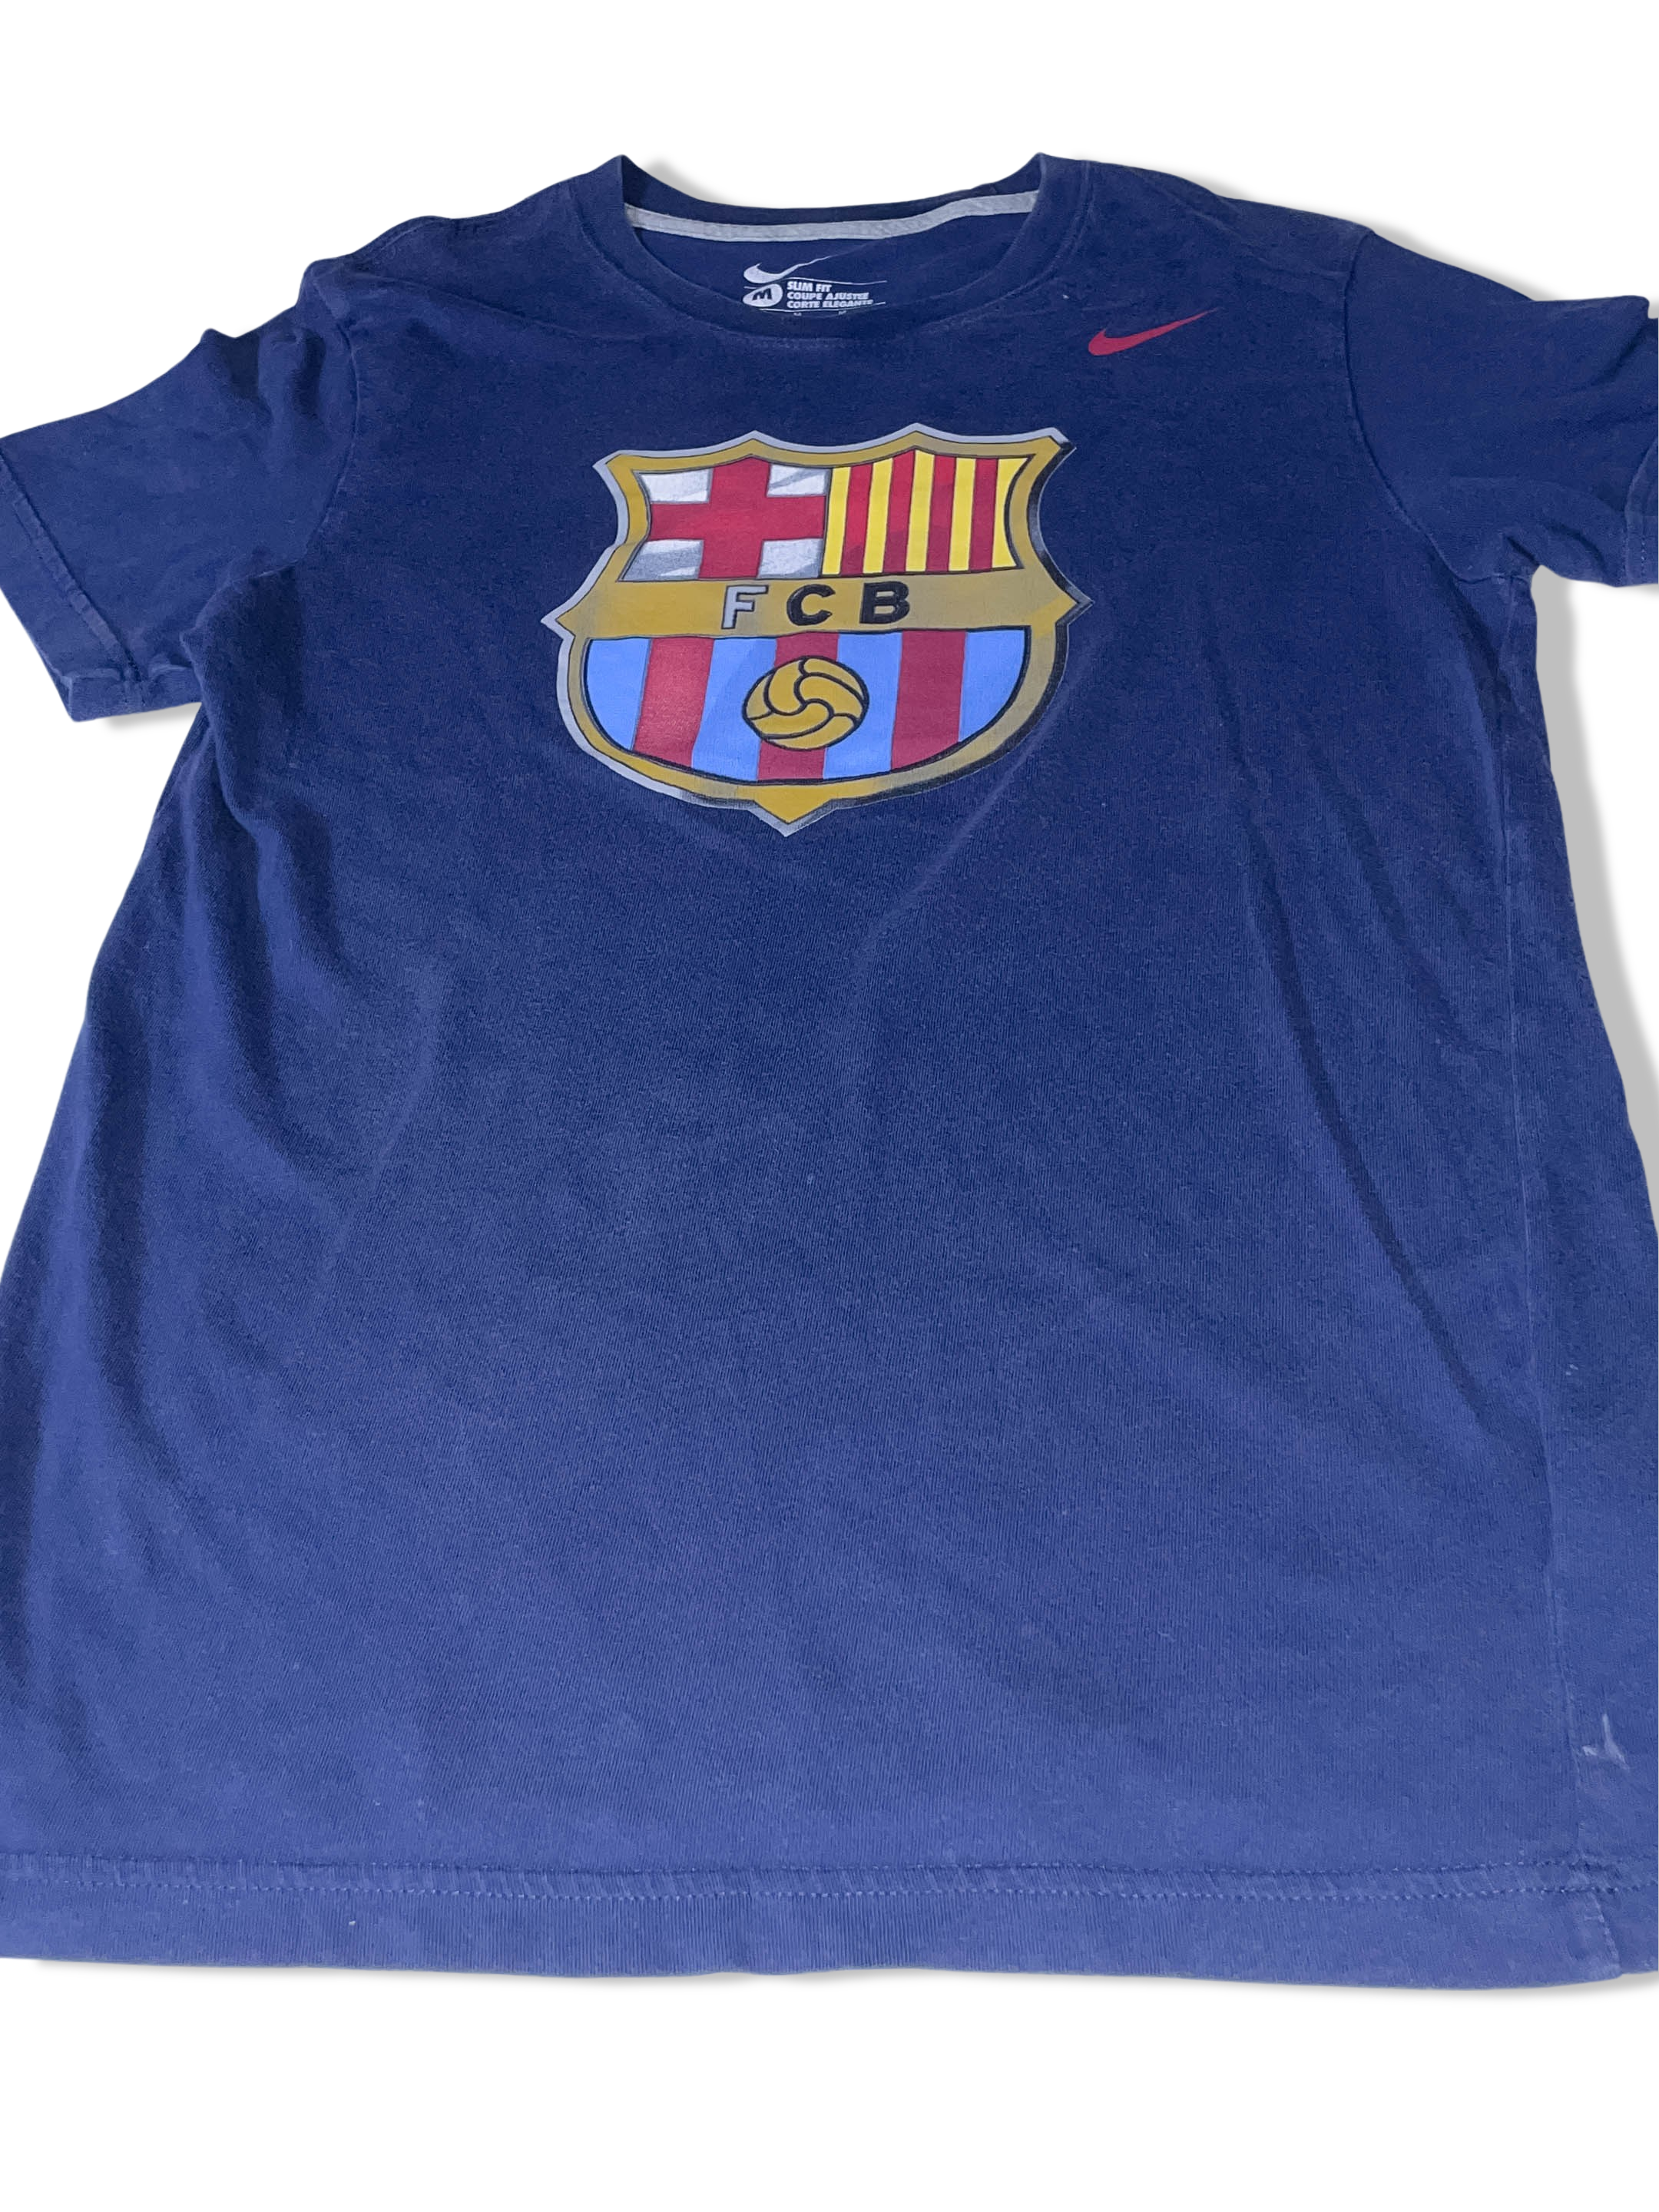 Vintage Nike FC Barcelona blue slim fit medium tees